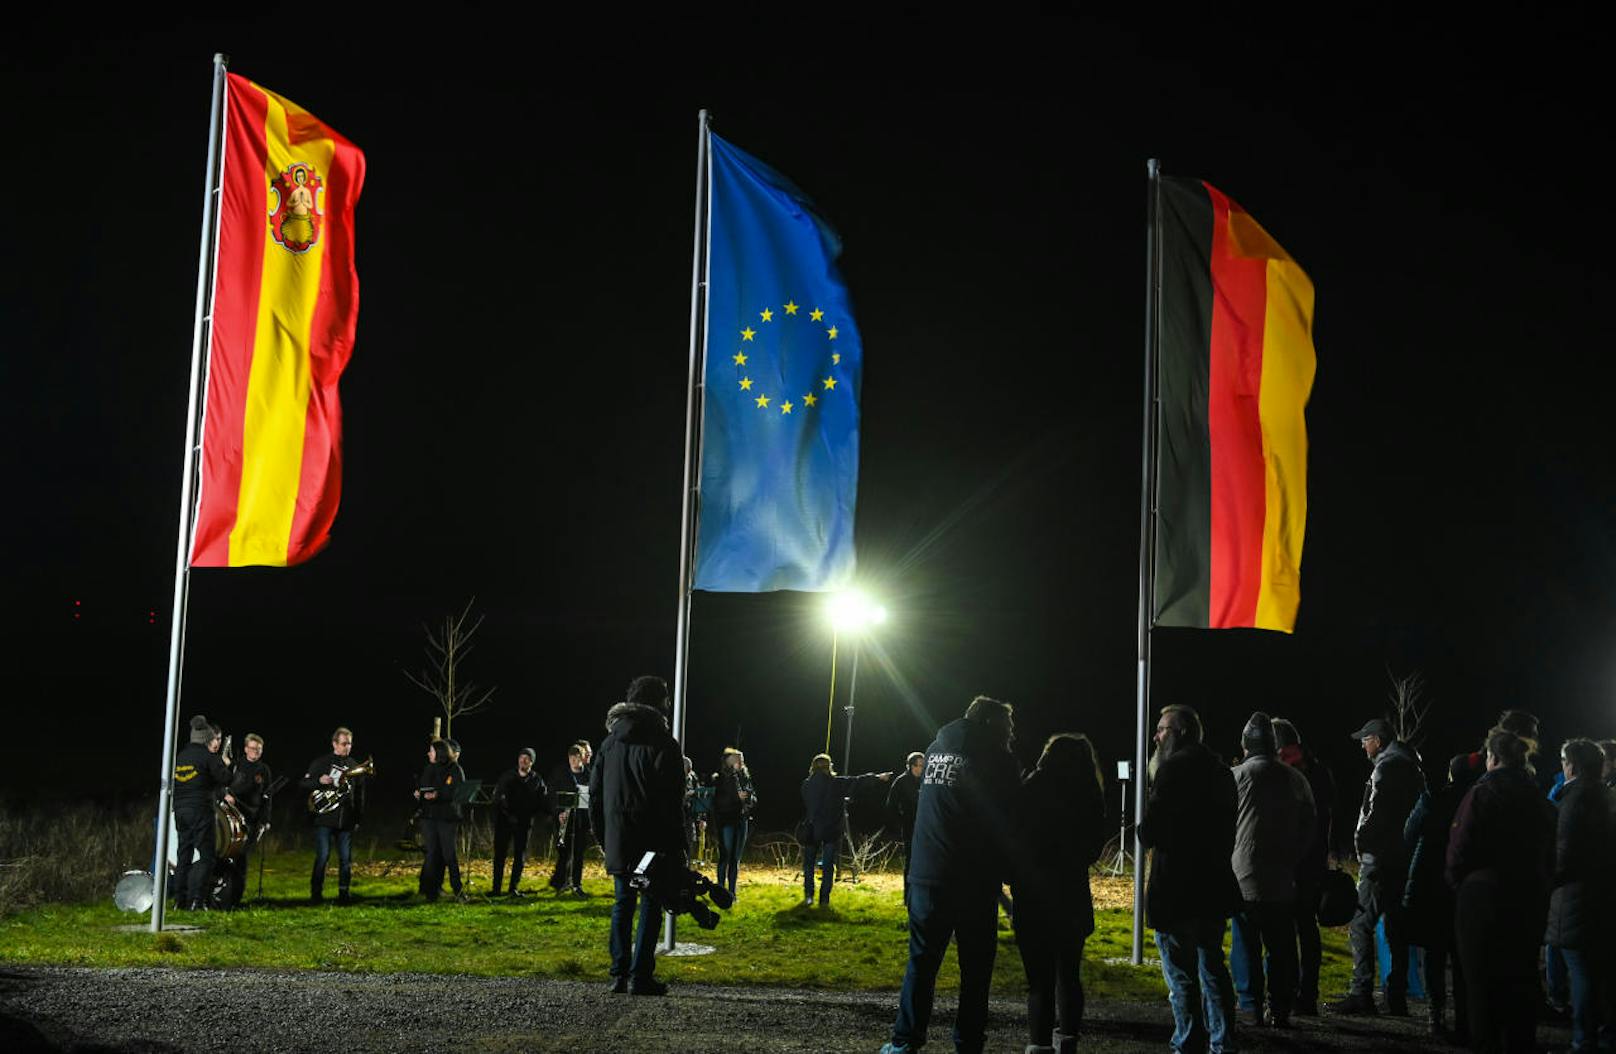 Mit Pauken und Trompeten wurde am 31. Jänner 2020 im bayrischen Gadheim ein besonderes Ereignis gefeiert: Durch den Brexit verschob sich der geographische Mittelpunkt der EU auf einen Acker direkt neben der 80-Seelen-Gemeinde.